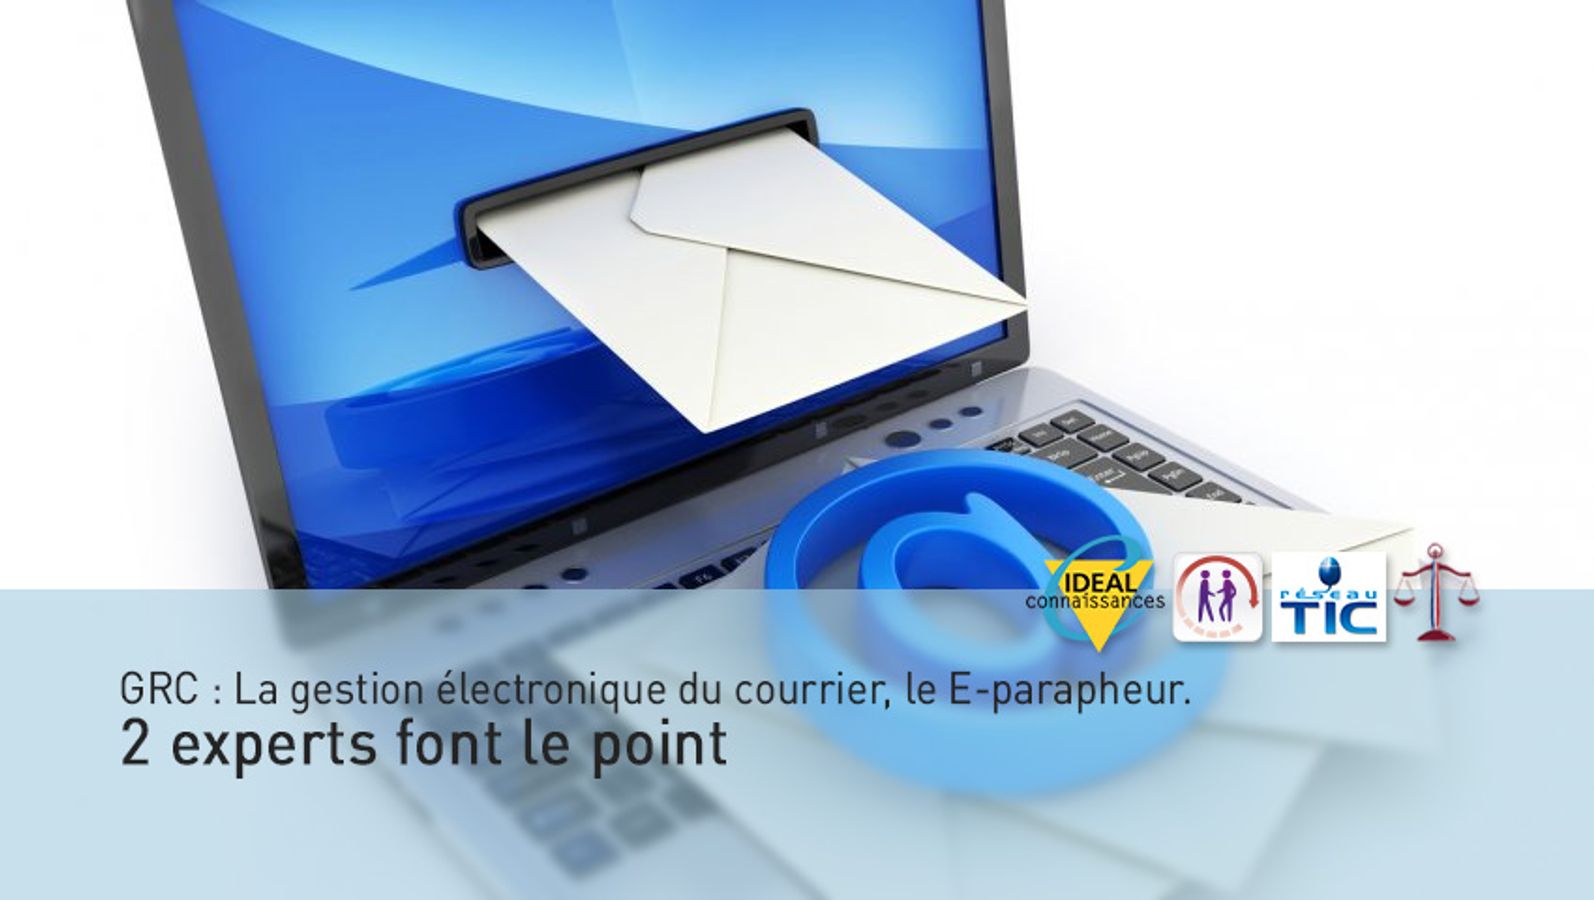 GRC : La gestion électronique du courrier, le E-parapheur. 2 experts font le point.